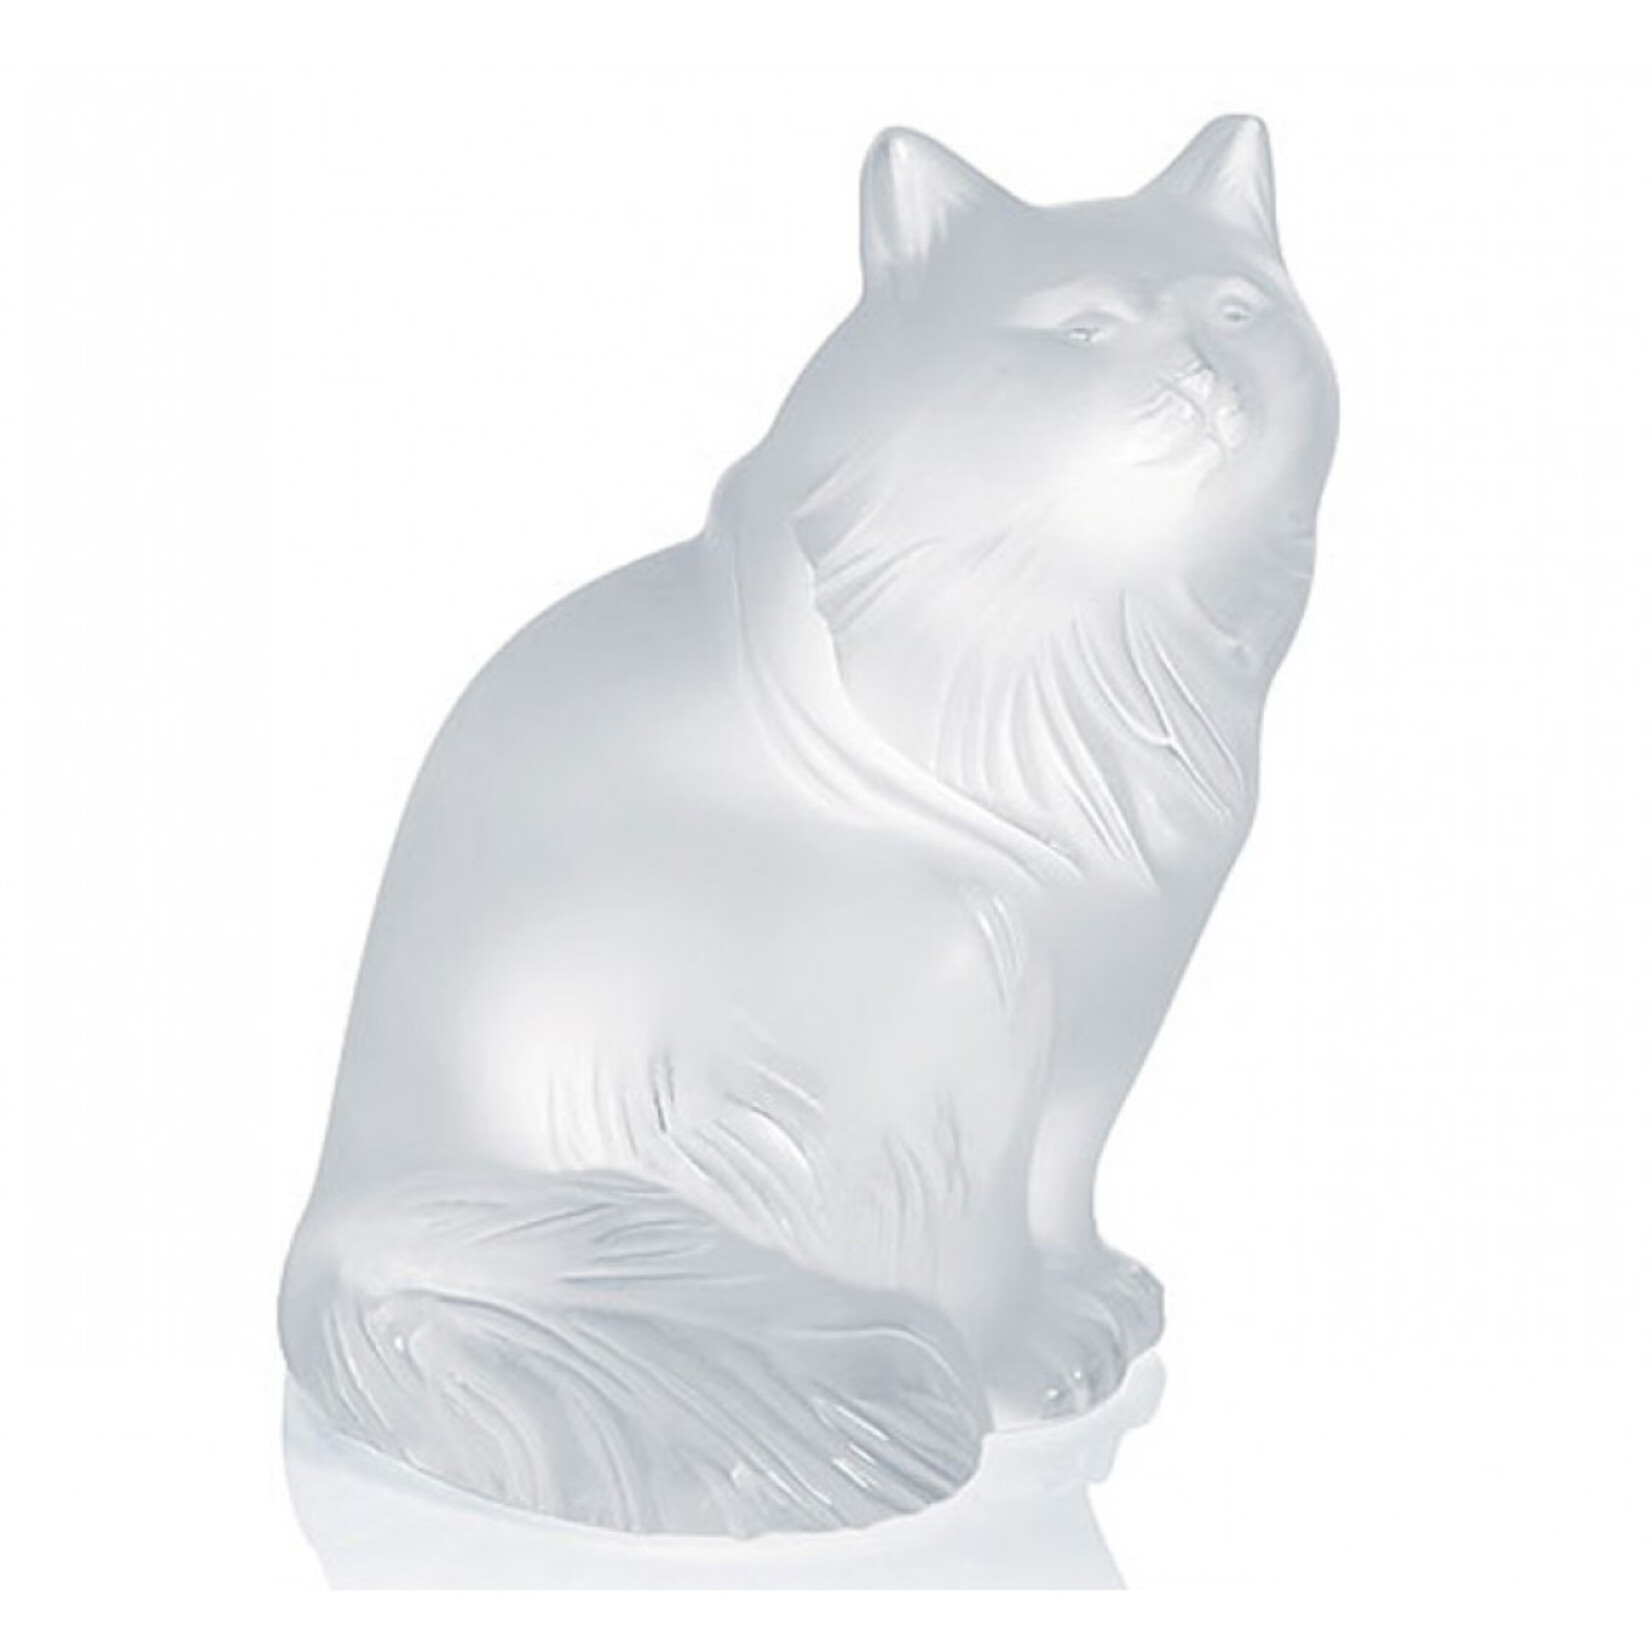 Lalique Heggie Cat